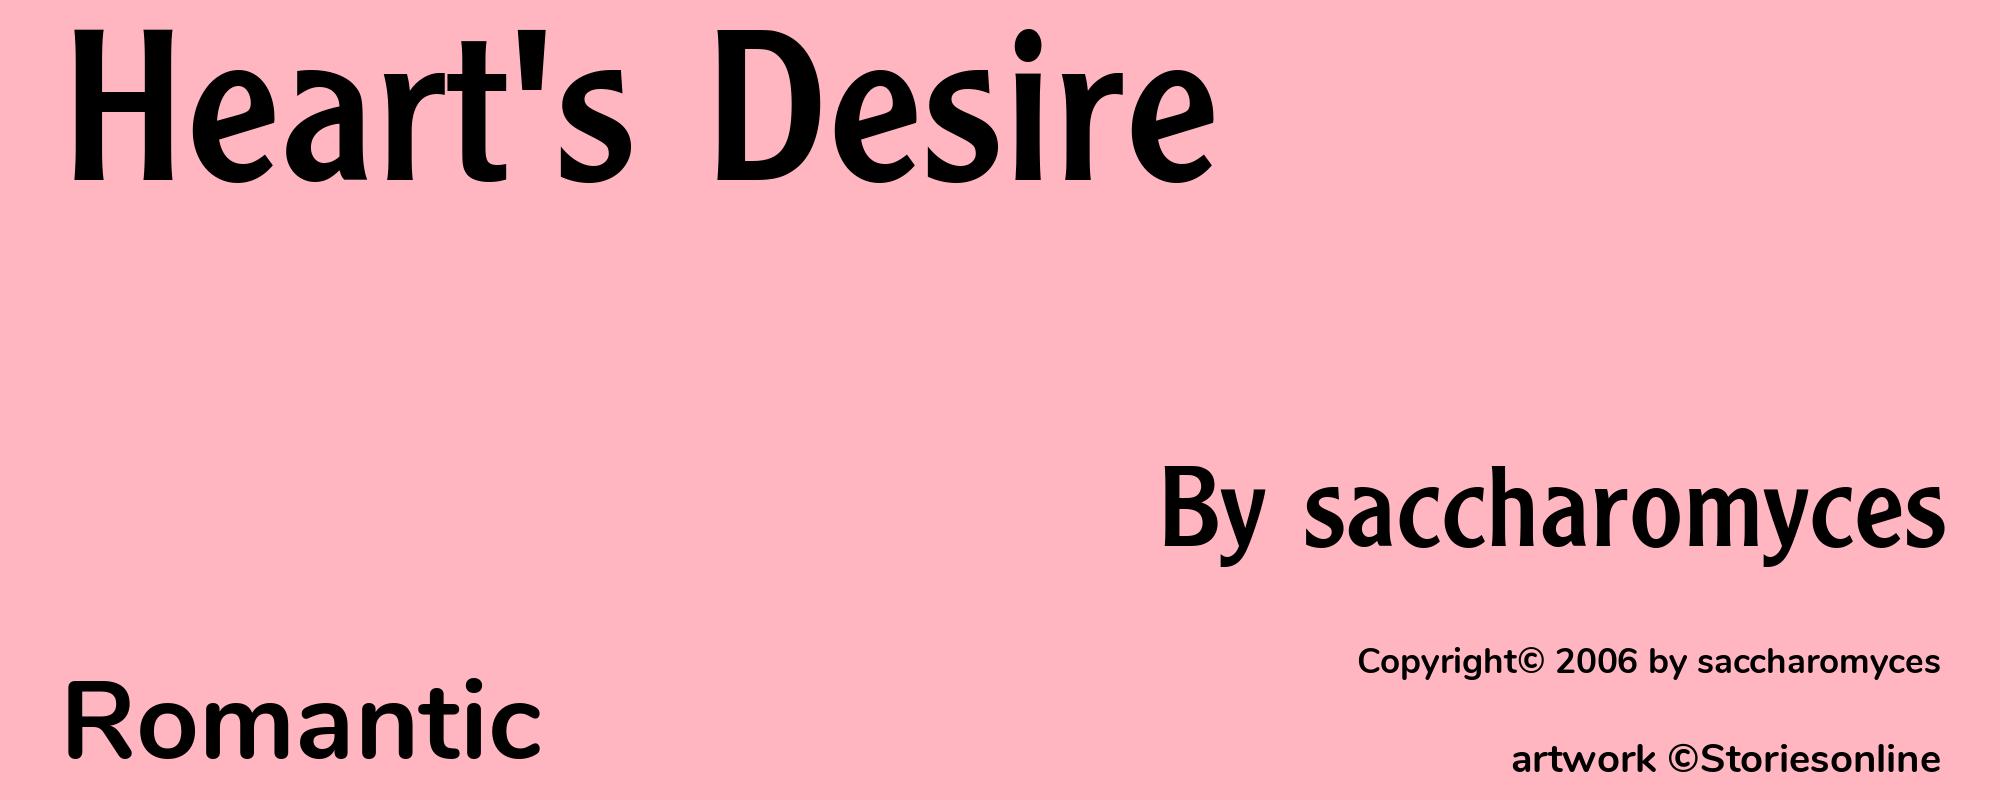 Heart's Desire - Cover